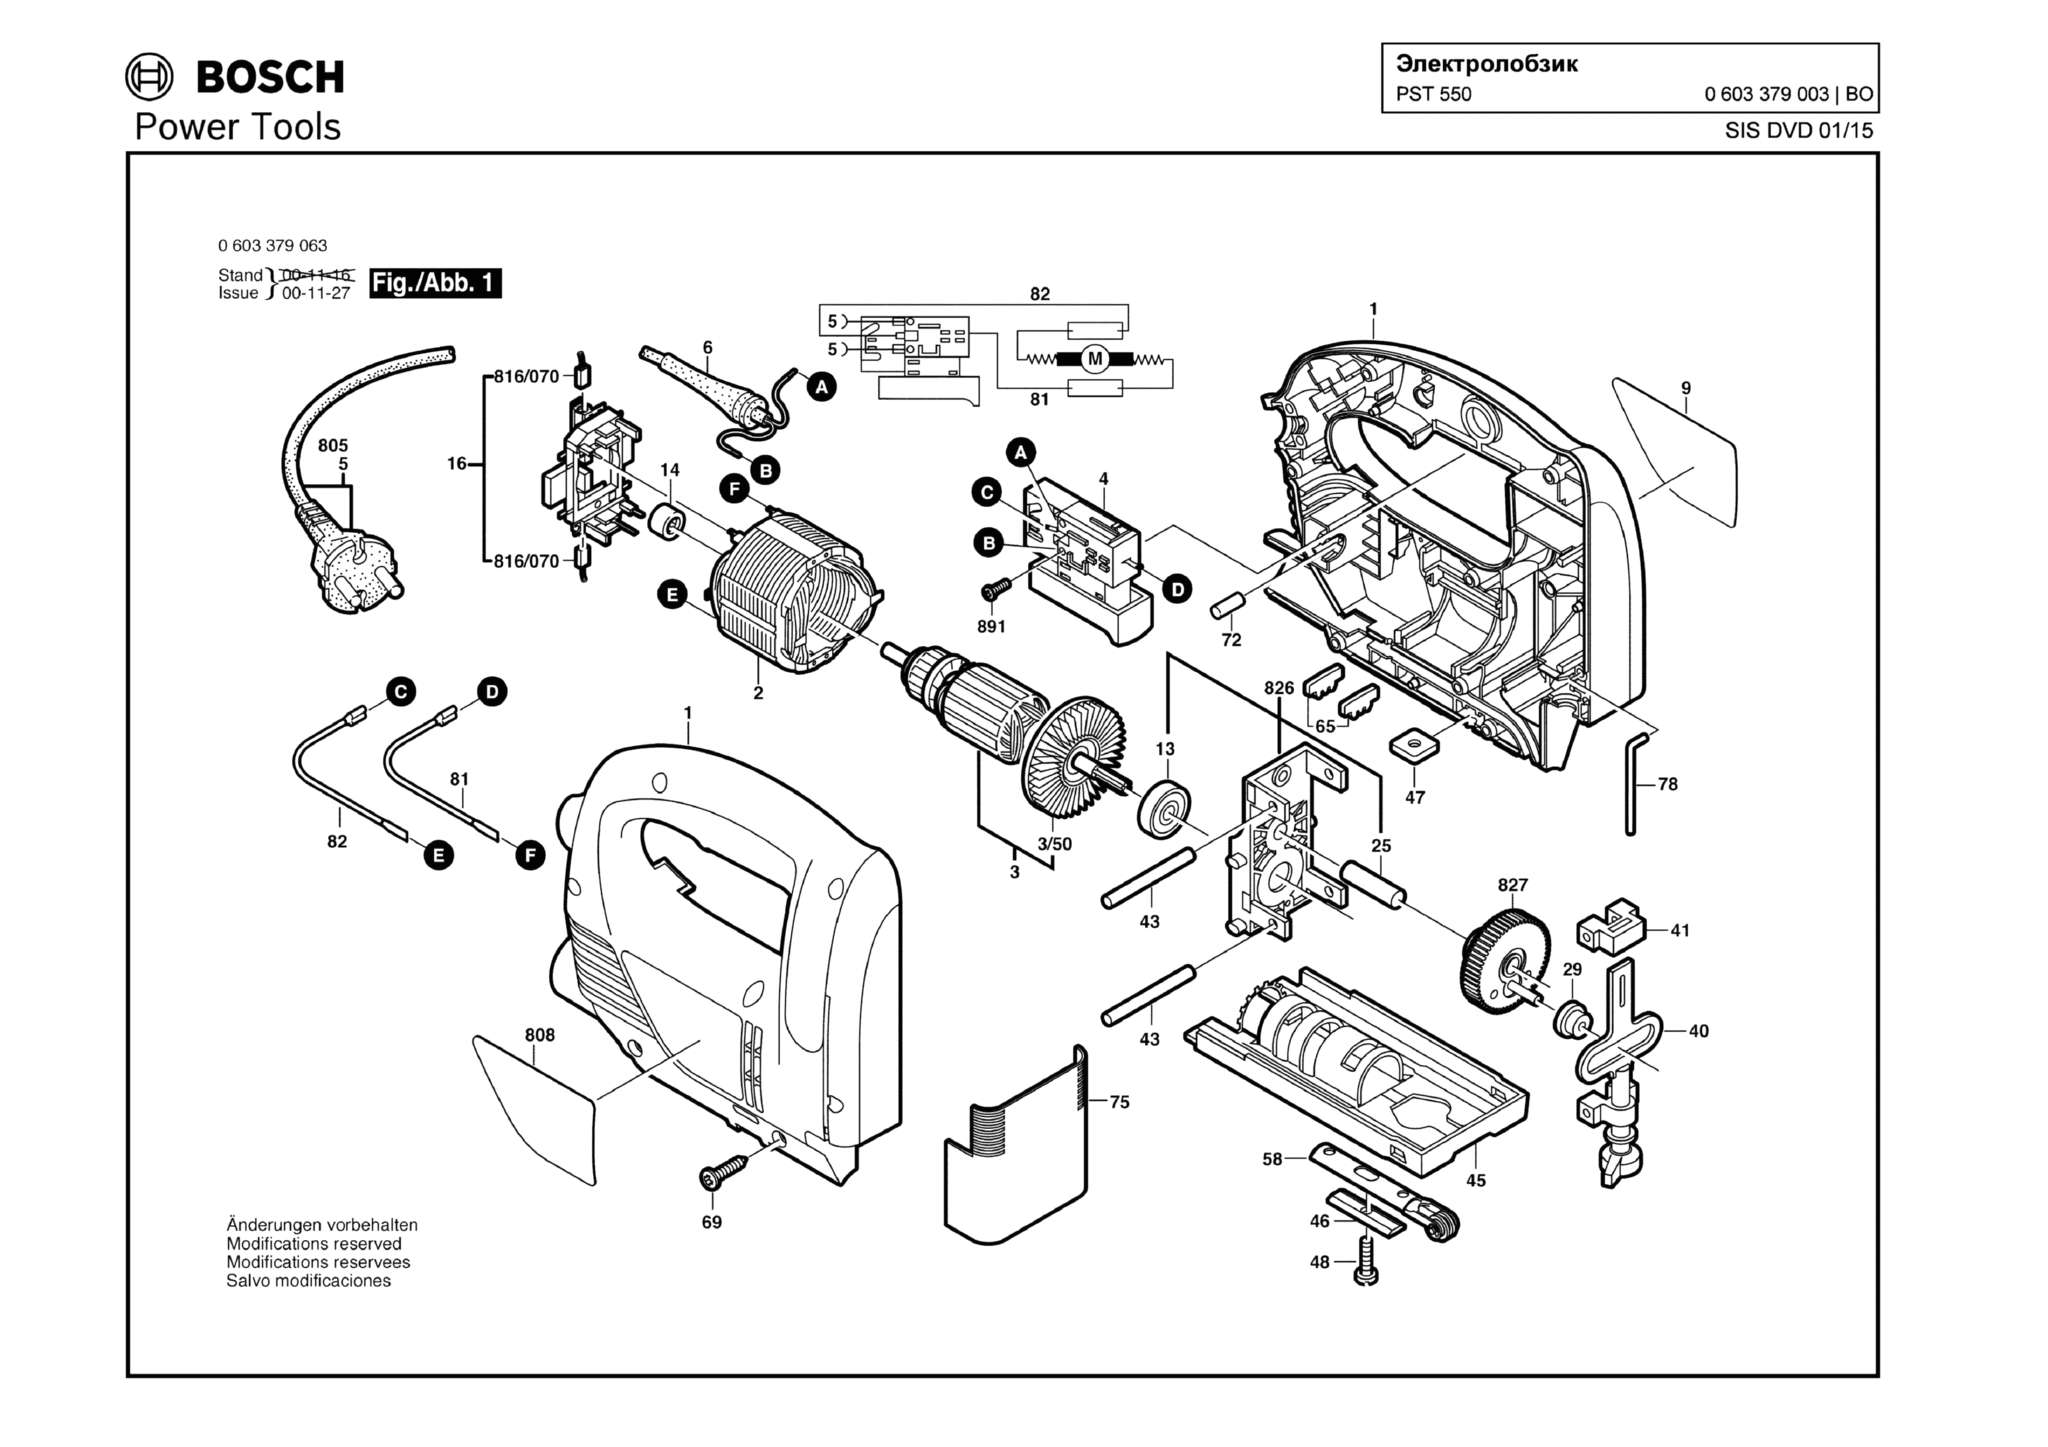 Запчасти, схема и деталировка Bosch PST 550 (ТИП 0603379003)